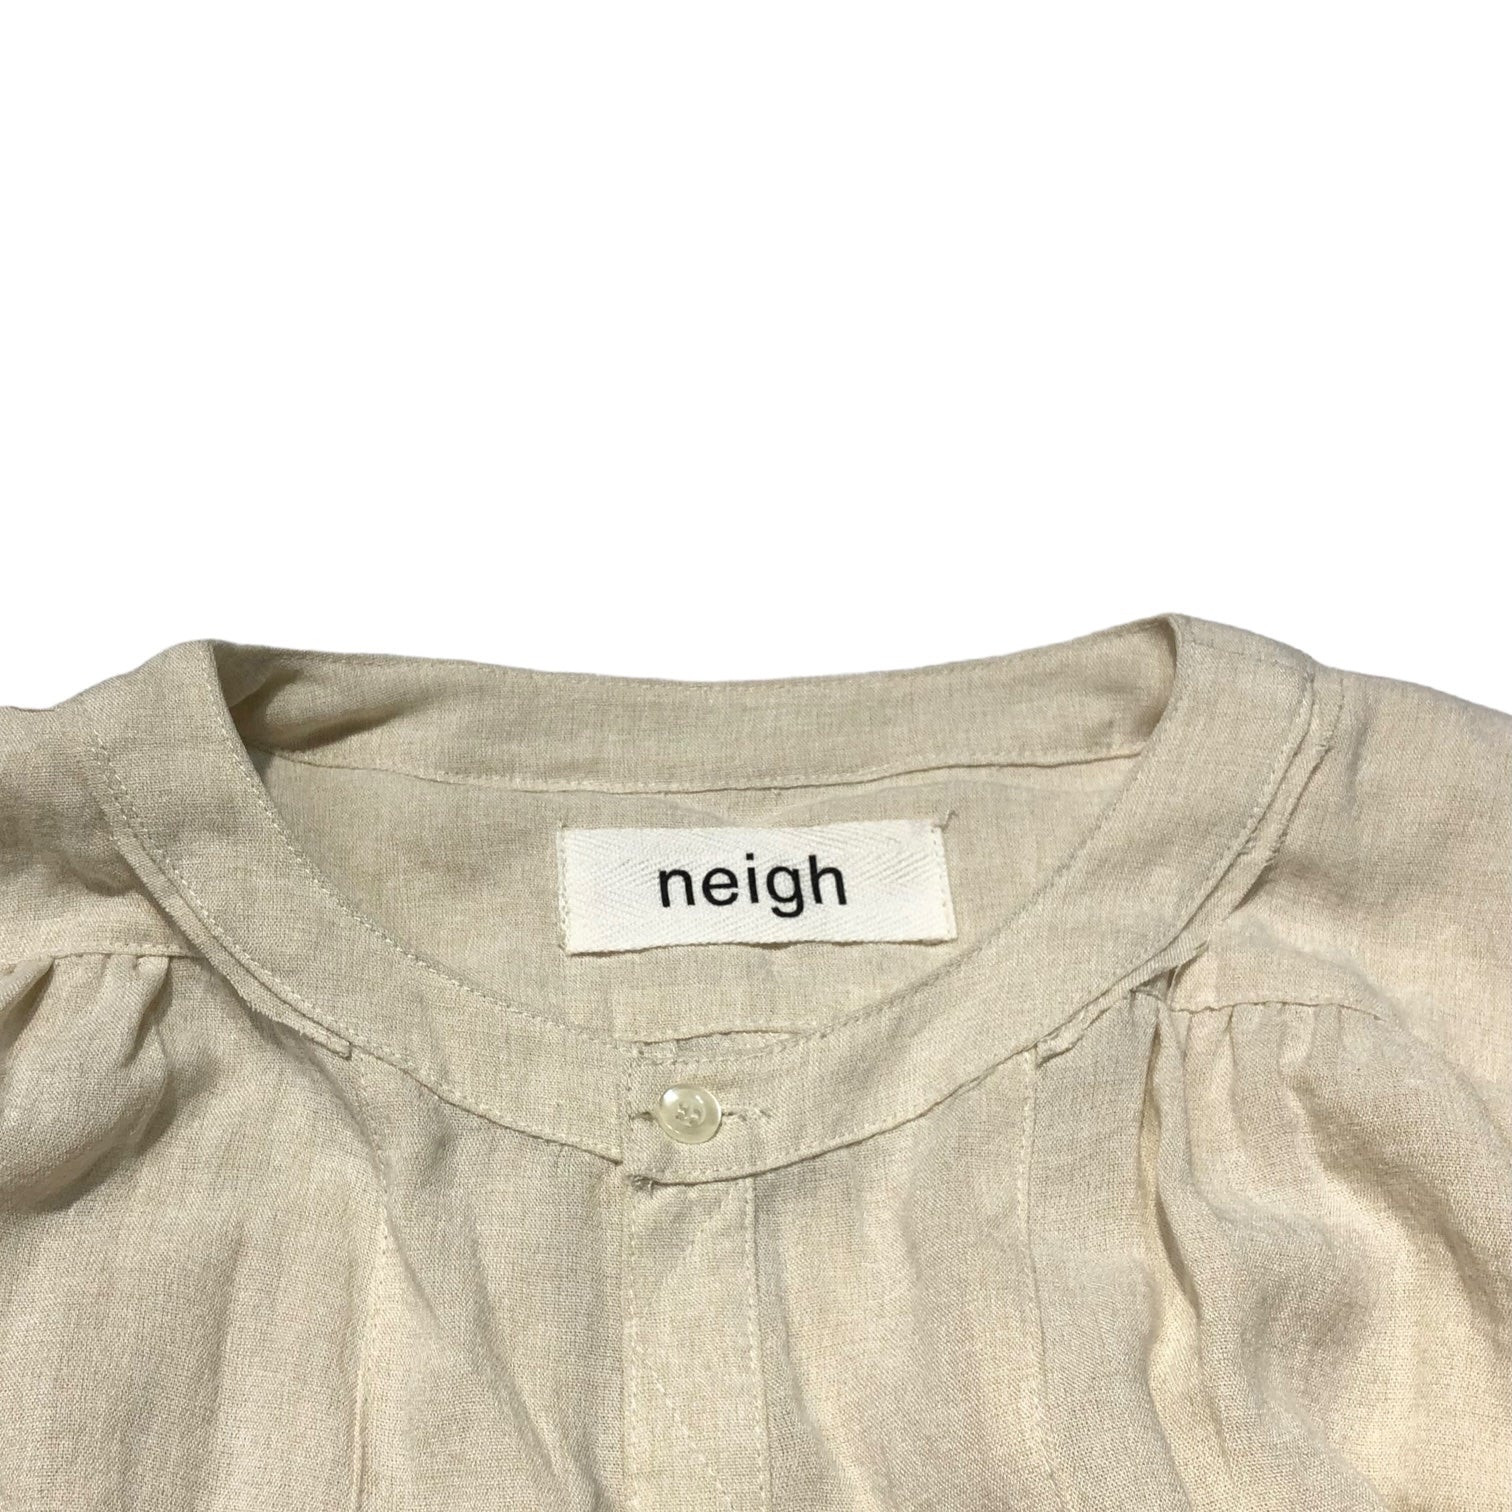 neigh(ネイ) Tuck gathered blouse dress タック ギャザー ブラウス ワンピース FREE アイボリー